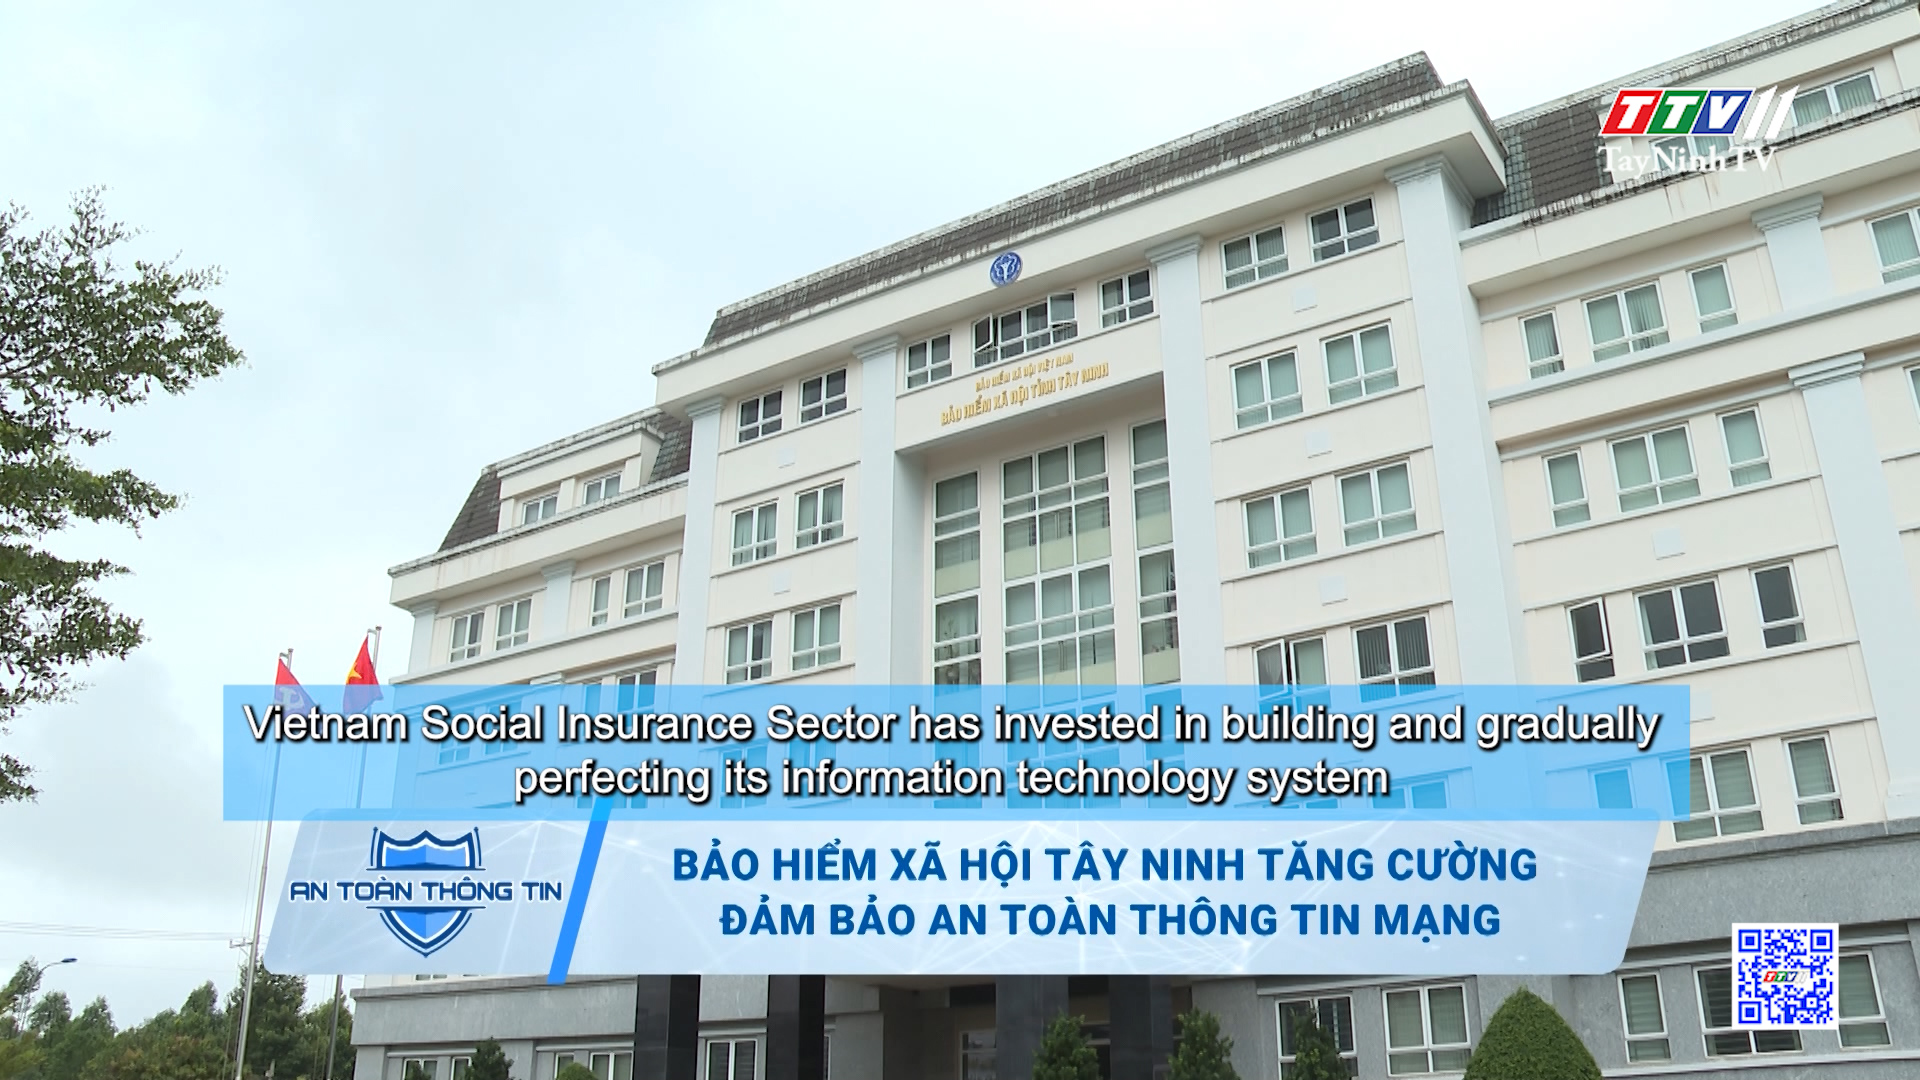 Bảo hiểm xã hội Tây Ninh tăng cường đảm bảo an toàn thông tin mạng | TayNinhTV